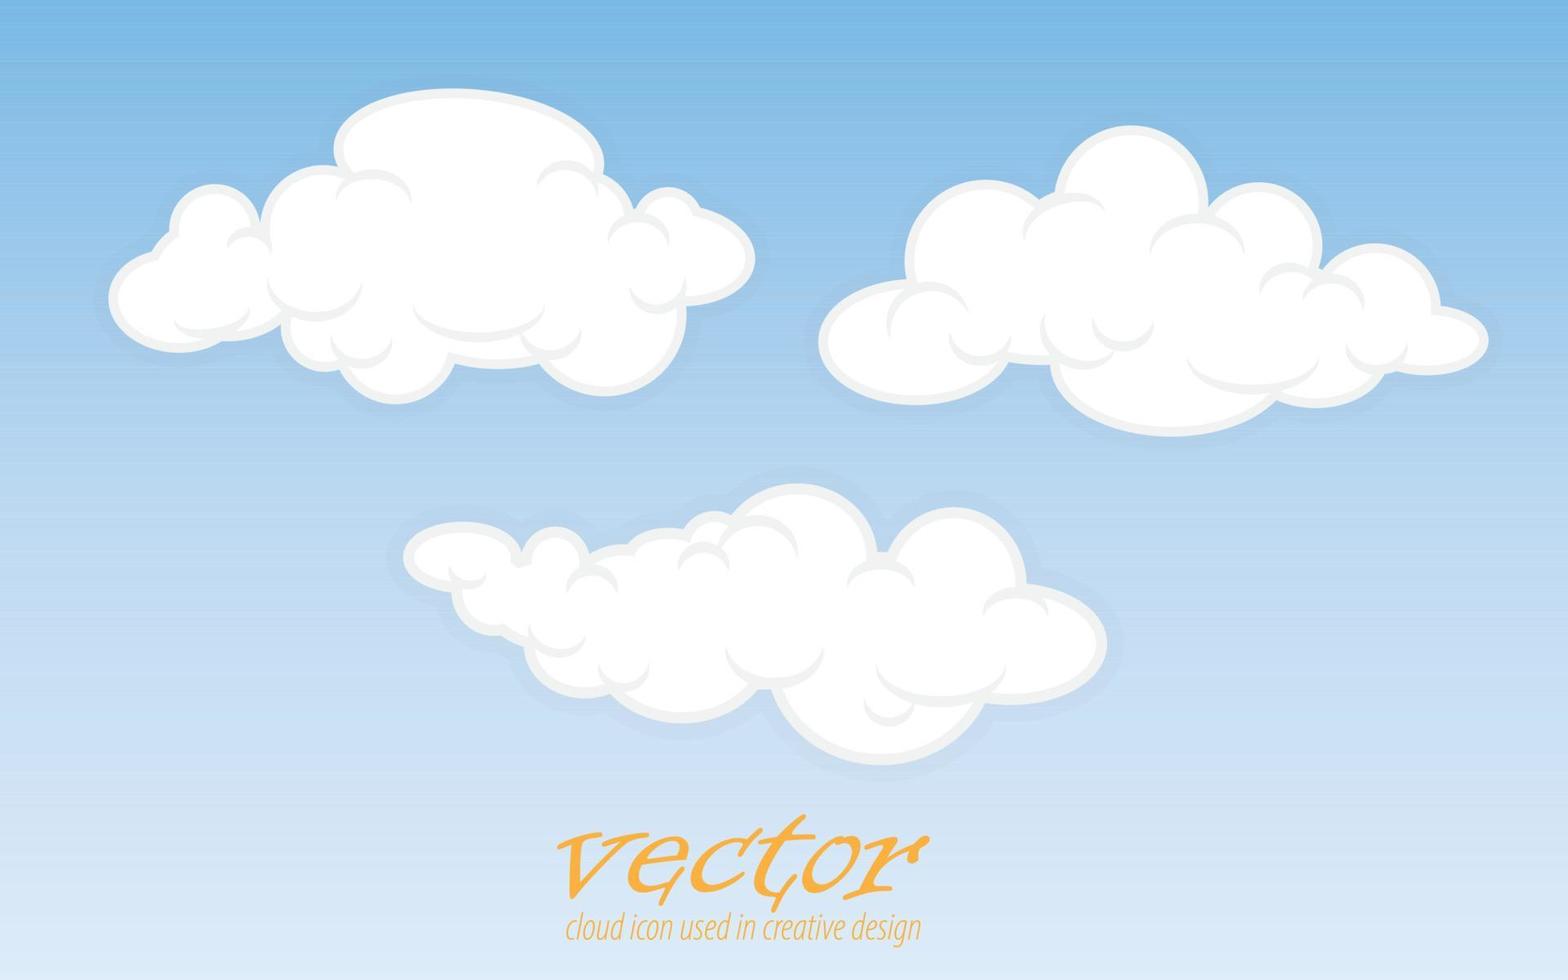 Vektorwolkensymbol, das im kreativen Design verwendet wird vektor